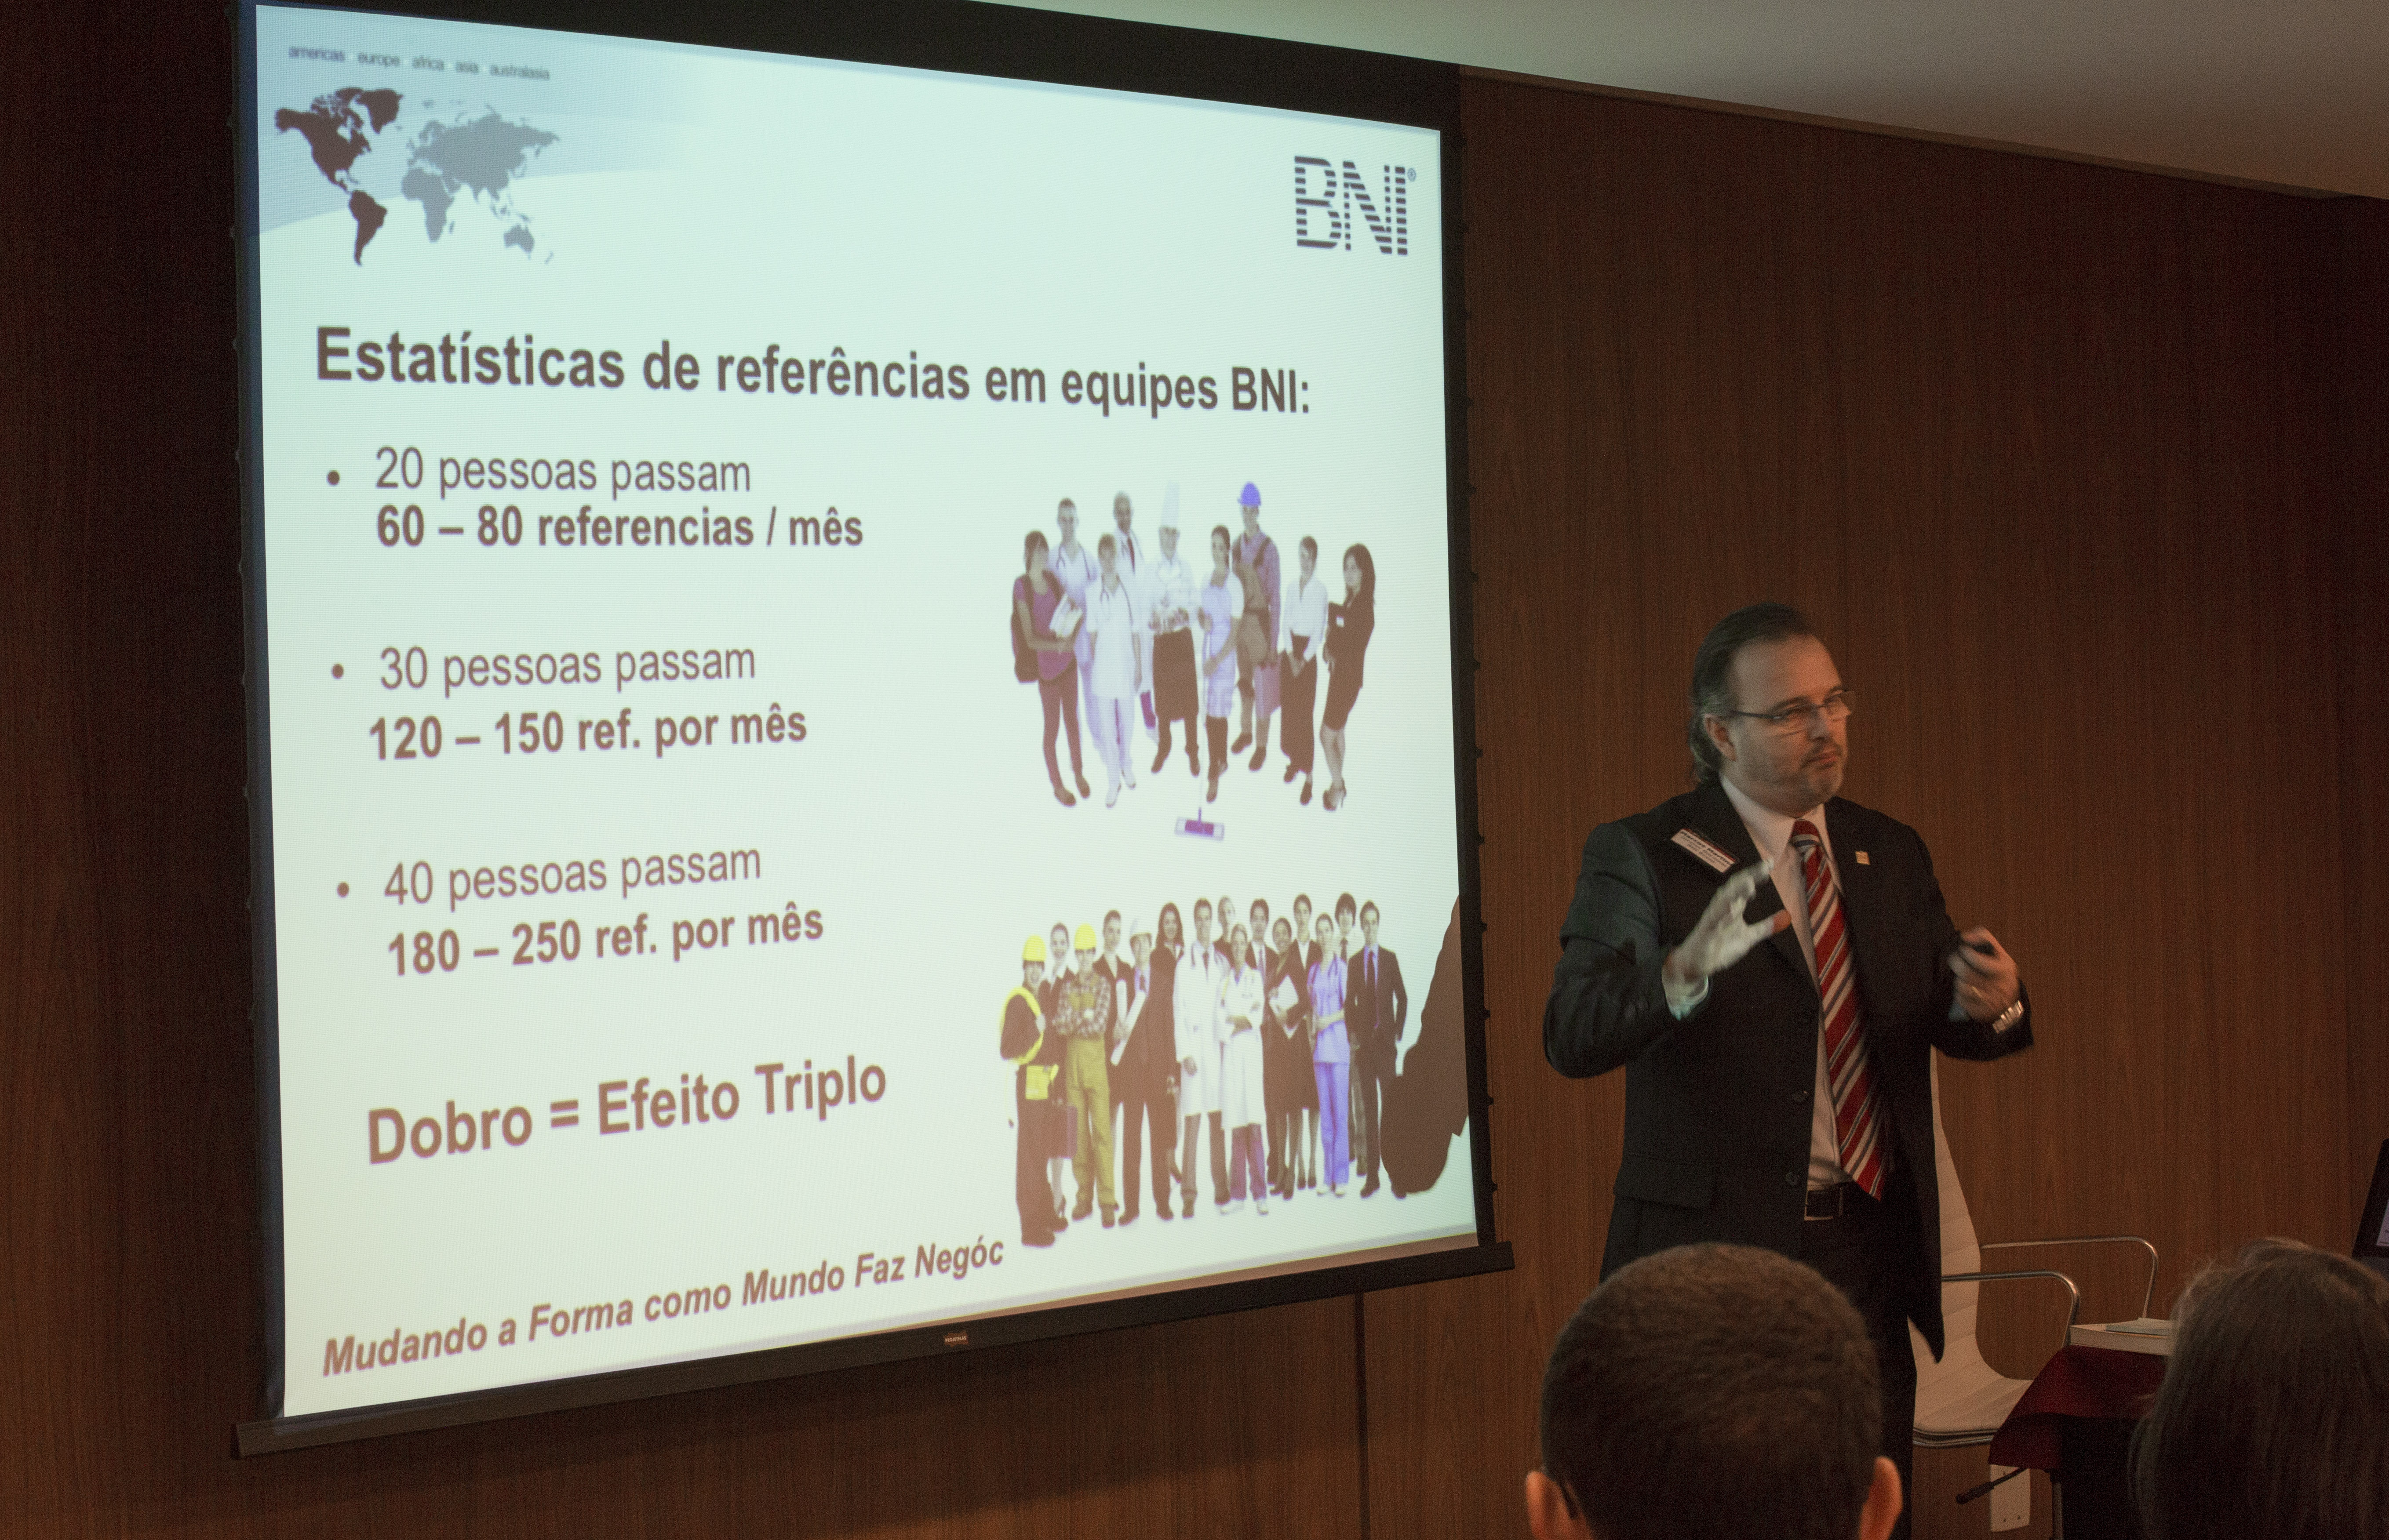 Evento de lançamento da BNI Ribeirão Preto/SP. Data: 29/07/2015. Foto: Renato Lopes.